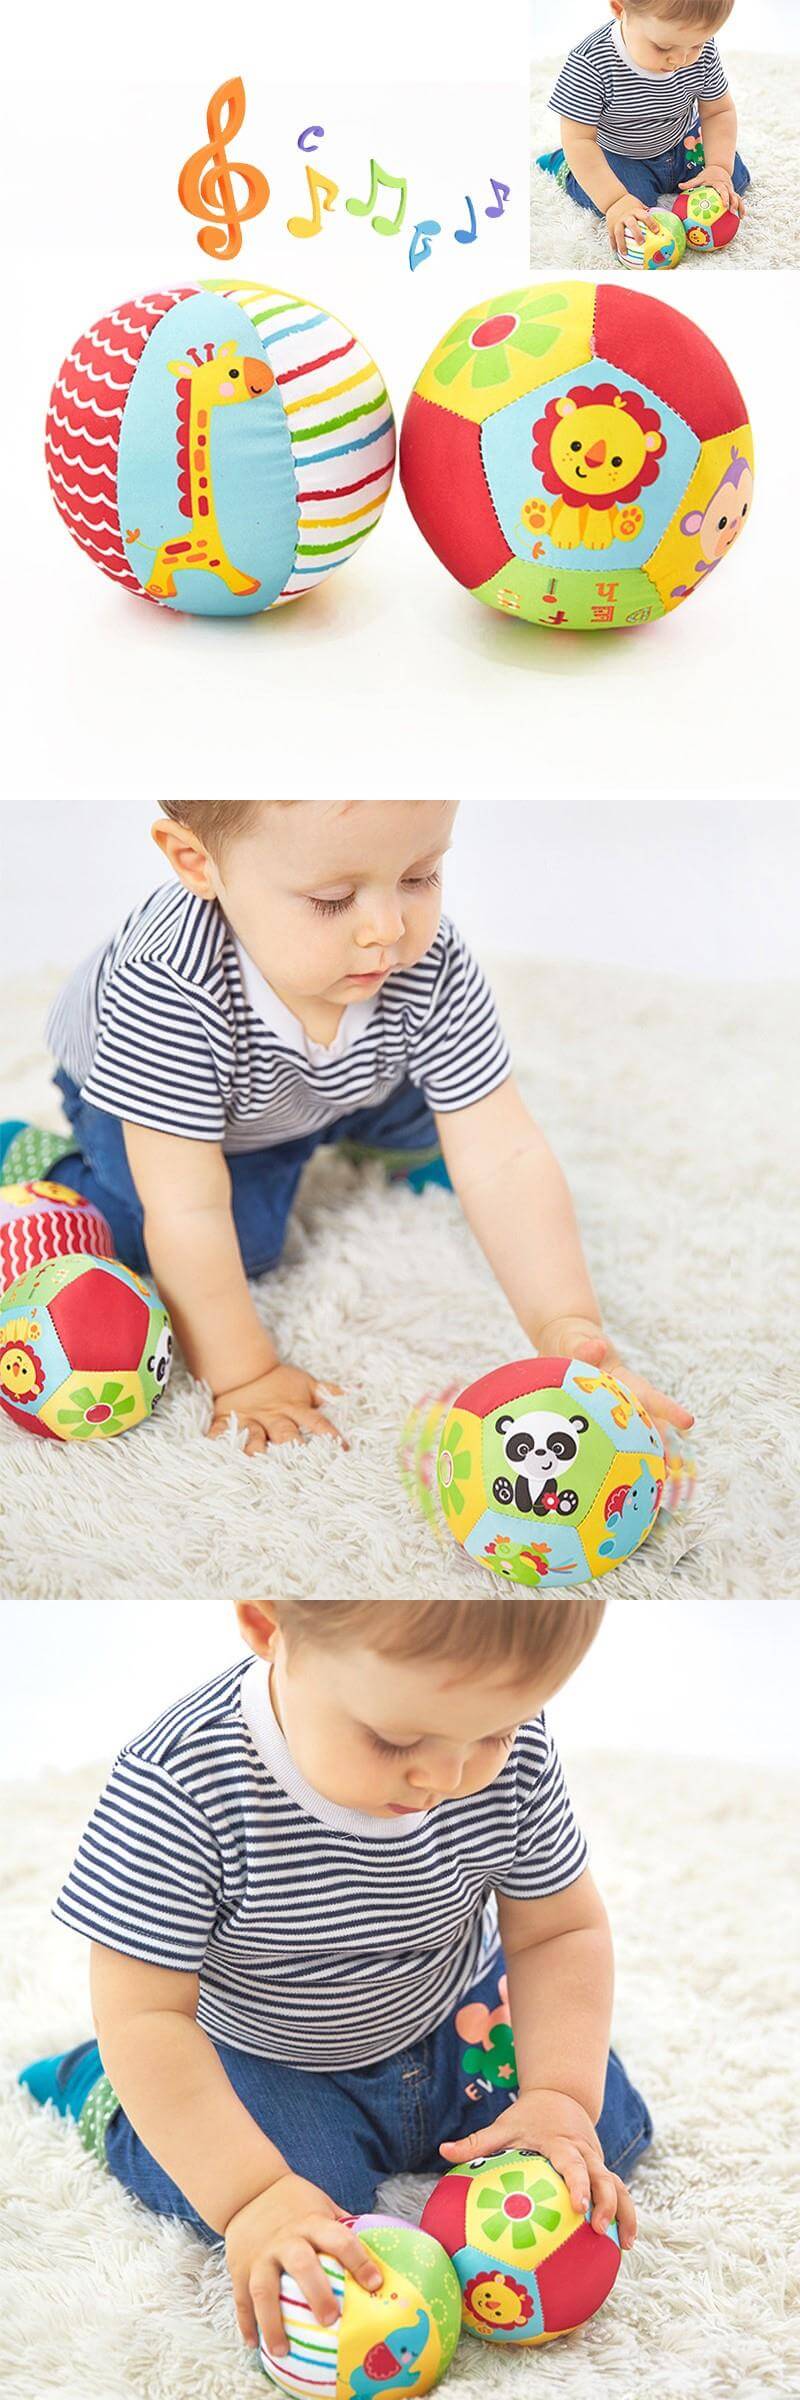 Bola Colorida com Sininhos Para bebê